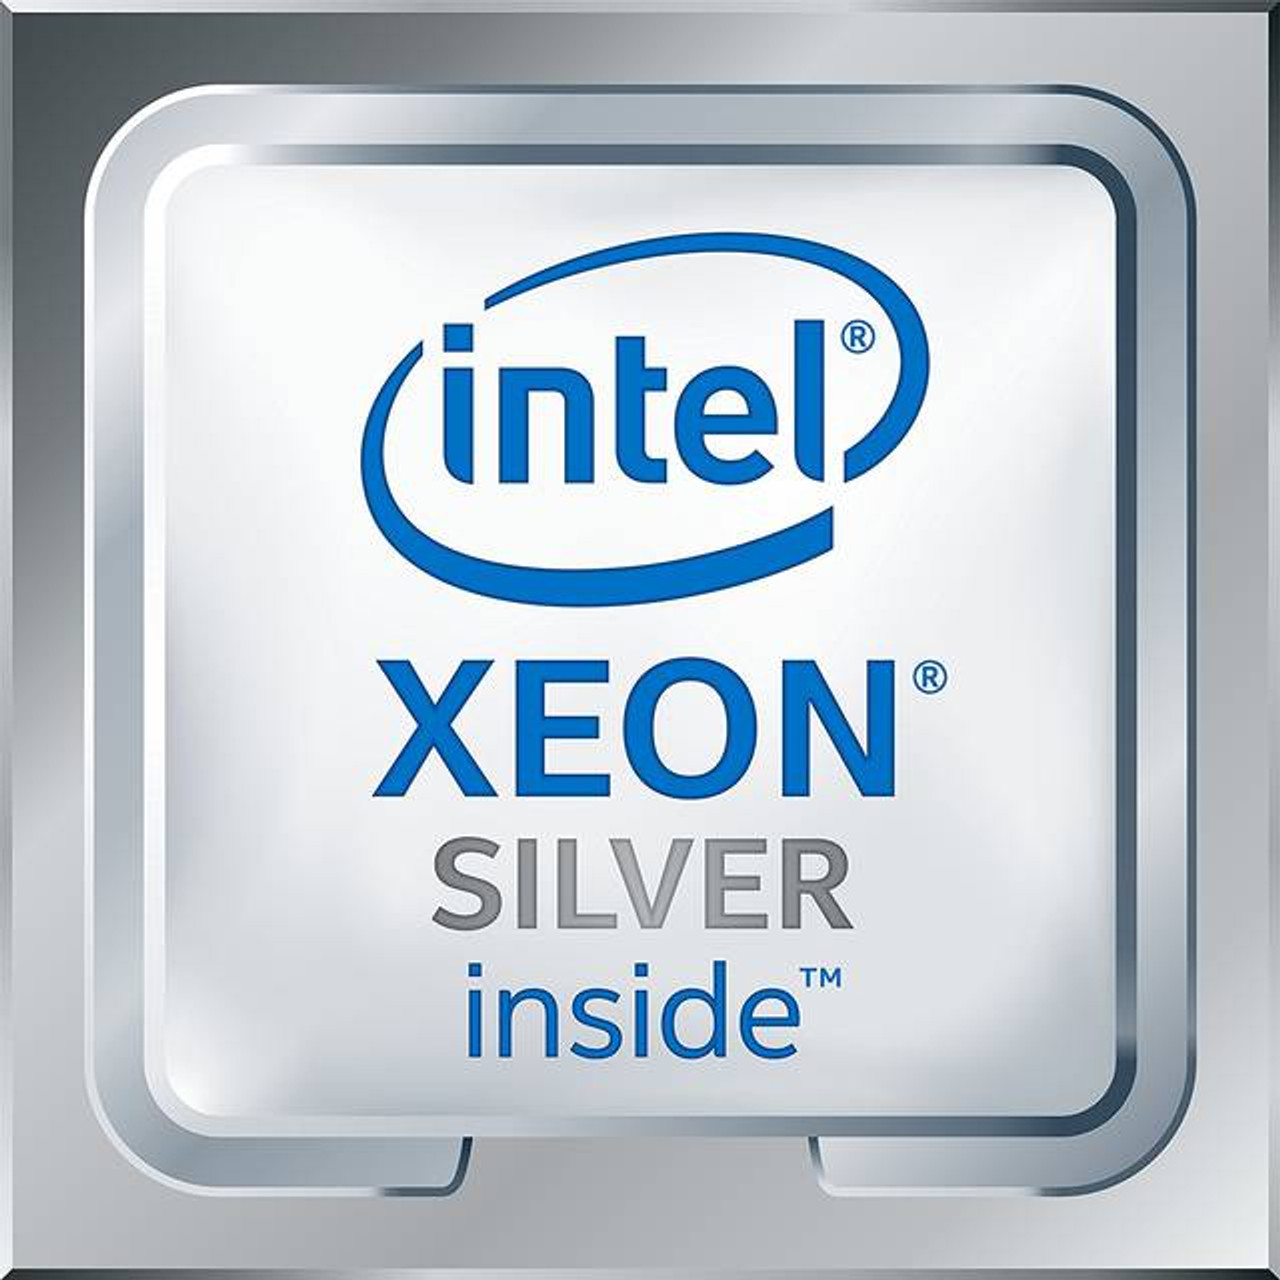 Intel Xeon Silver 4112 Quad-Core Skylake Processor 2.6GHz 8.25MB L3 LGA 3647 CPU, OEM